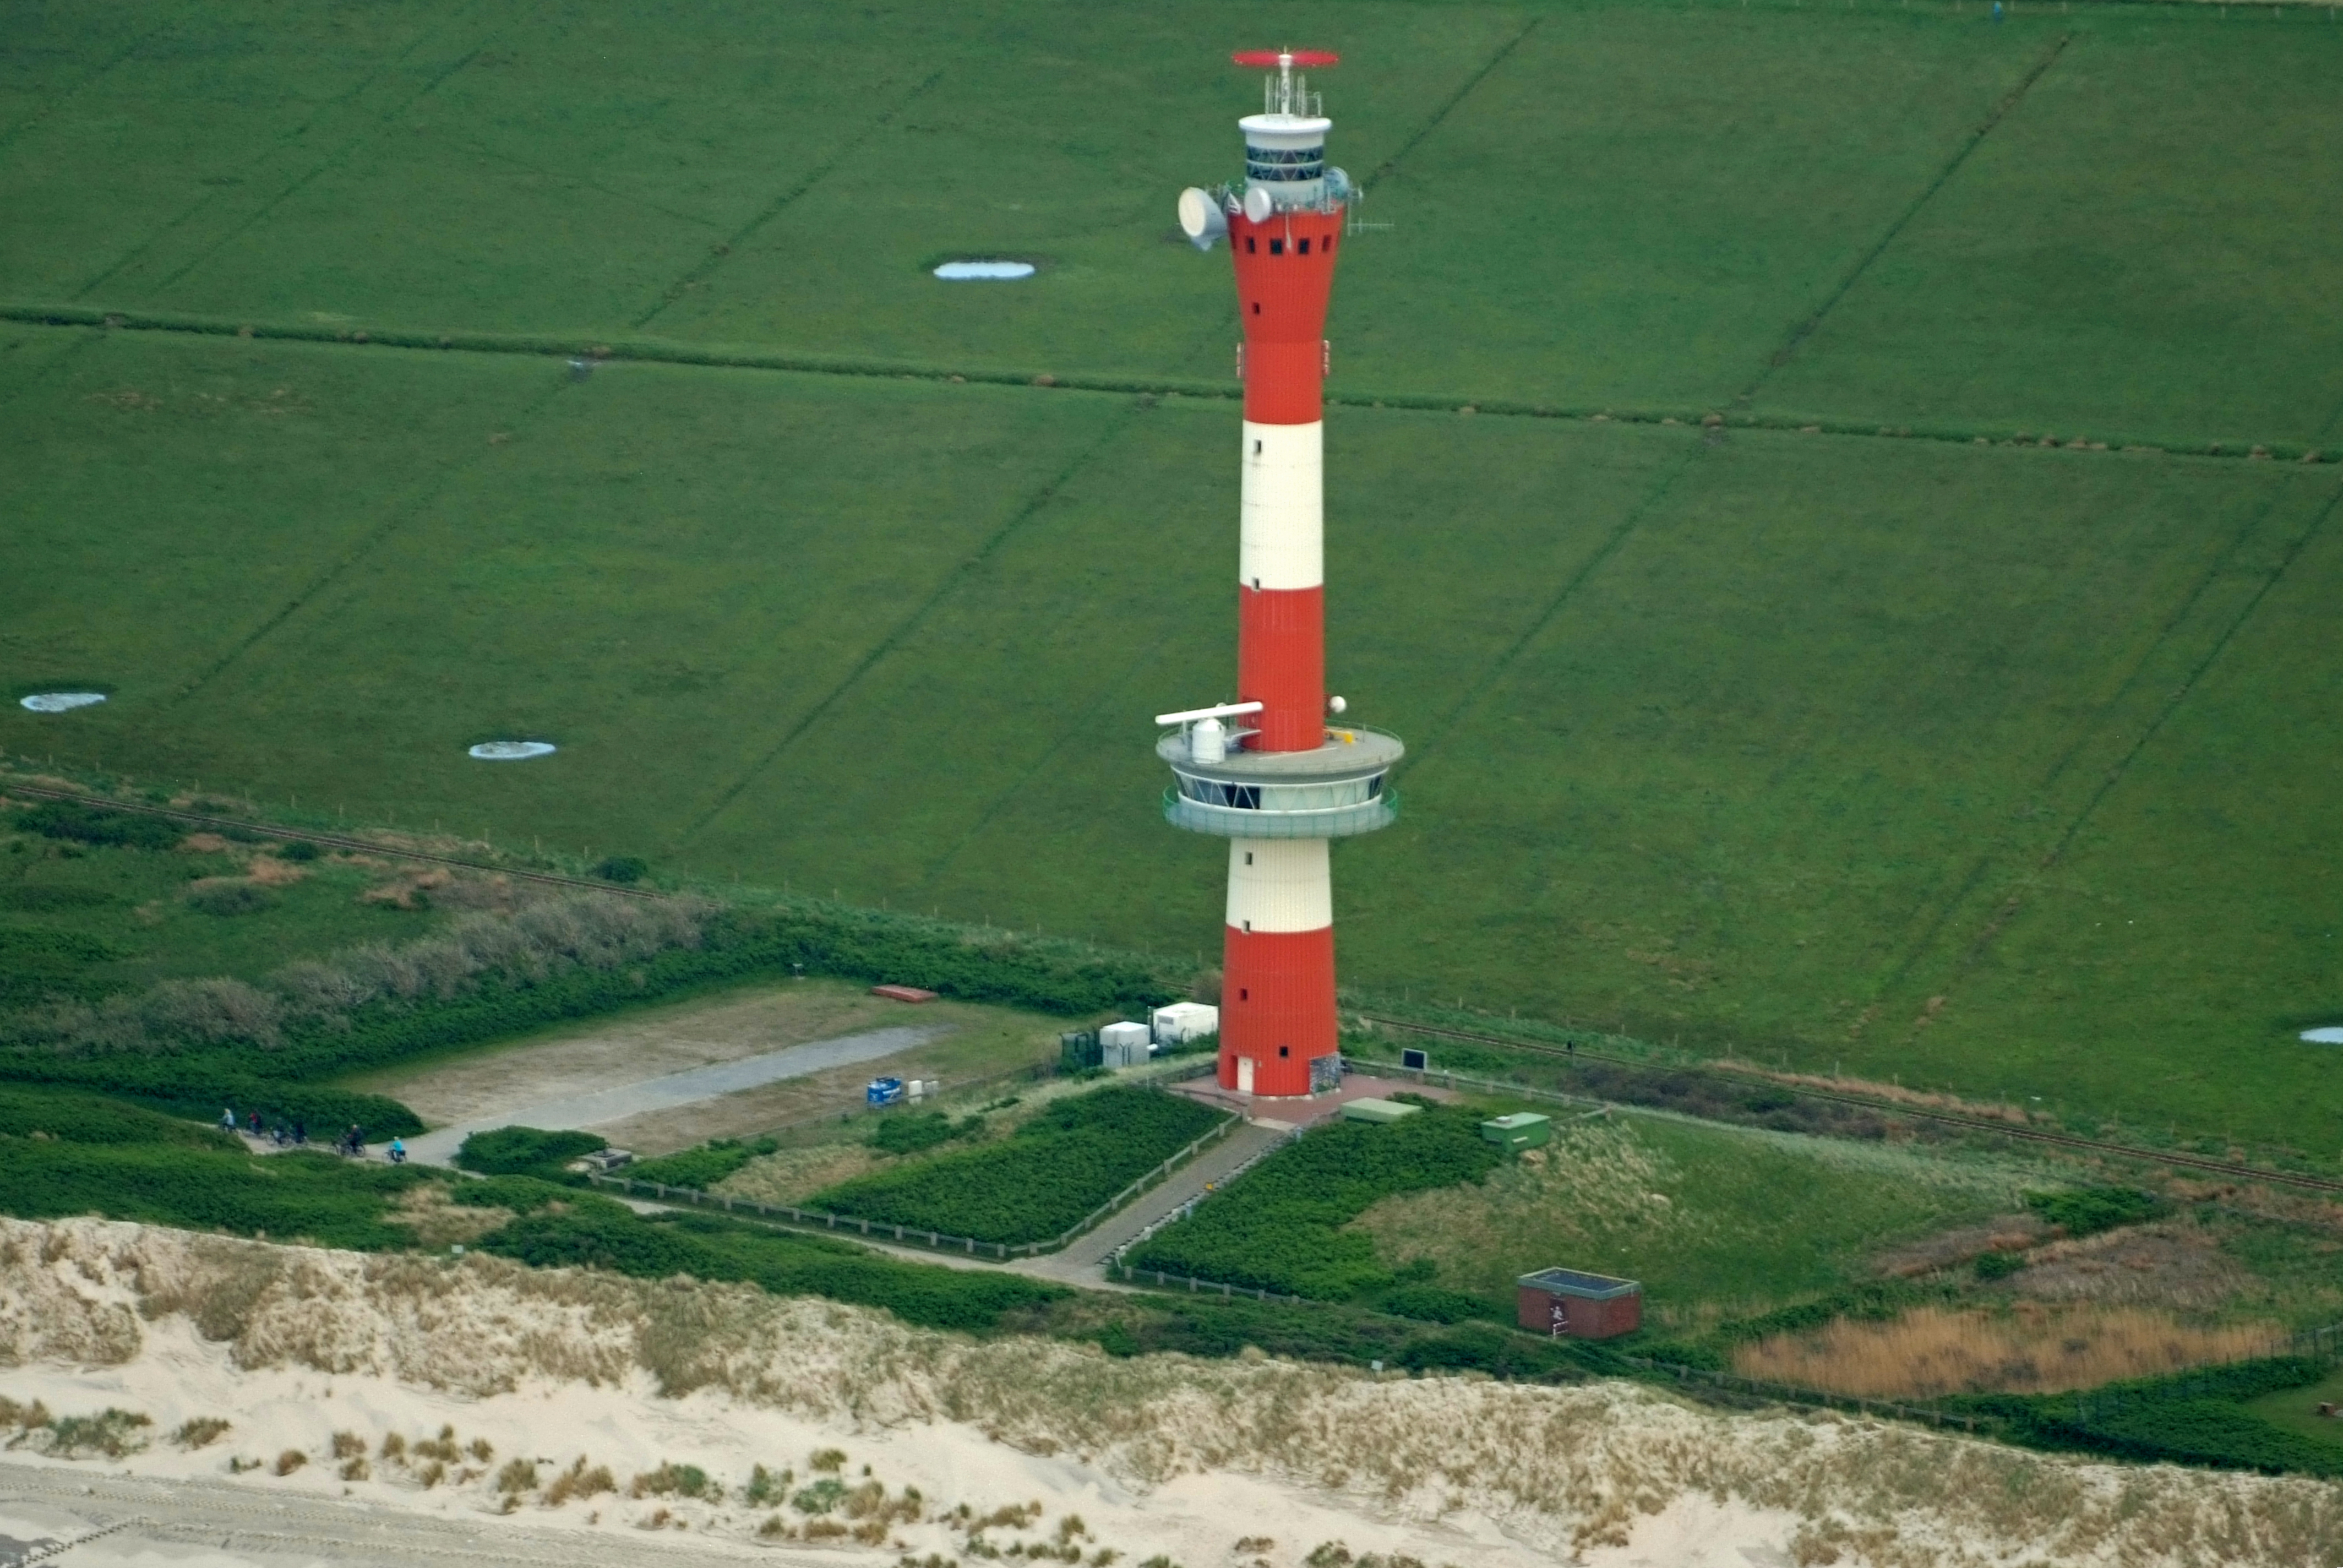 Der Neuer Leuchtturm Wangerooge im Bundesland Niedersachsen in der Region Nordsee/Außenjade in der Übersicht aller Leuchttürme in Deutschland bei Natura Event.